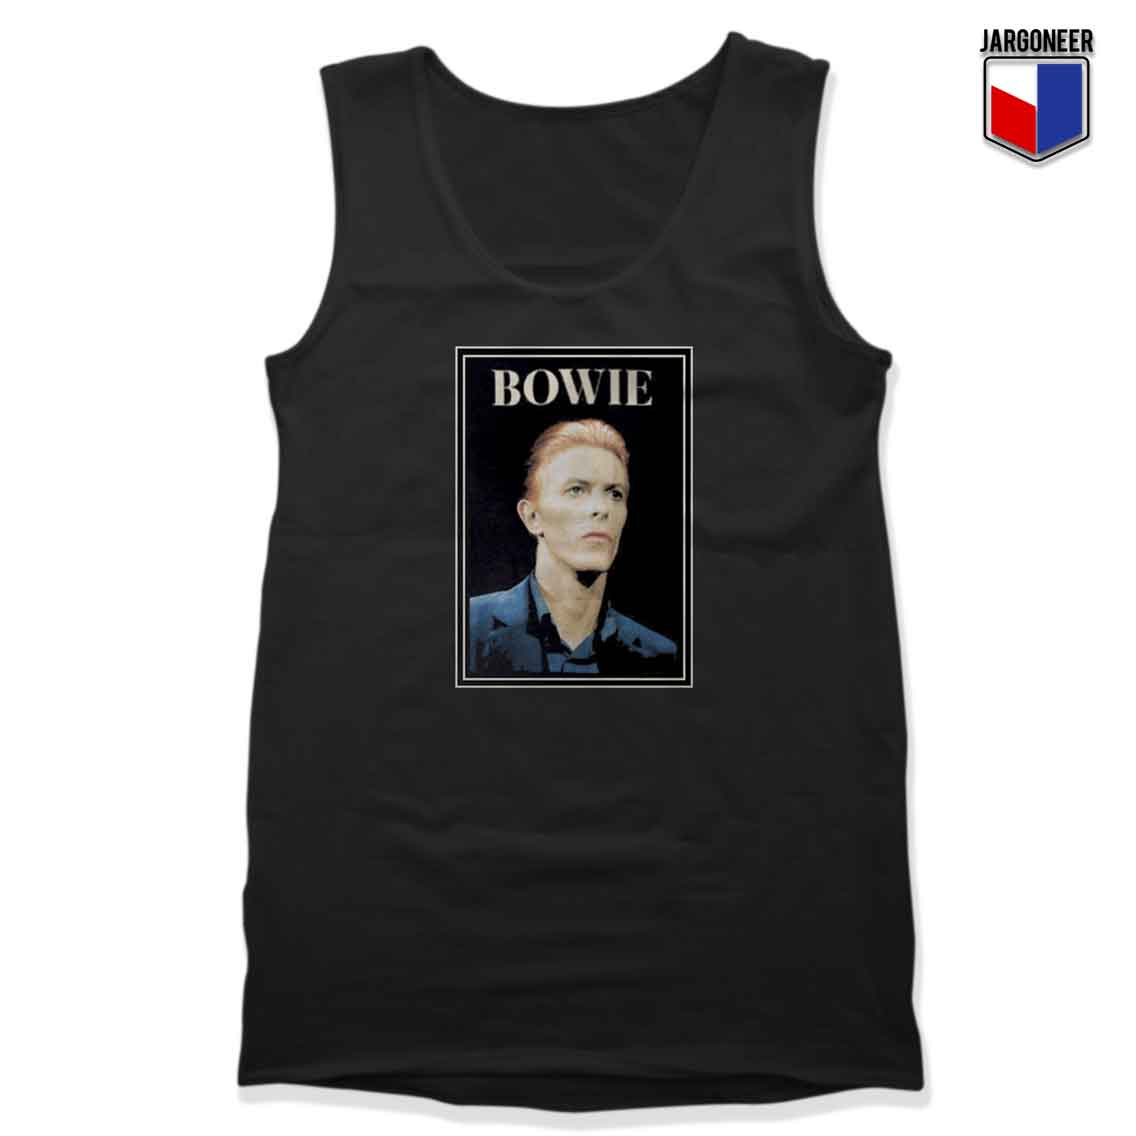 David Bowie - Shop Unique Graphic Cool Shirt Designs